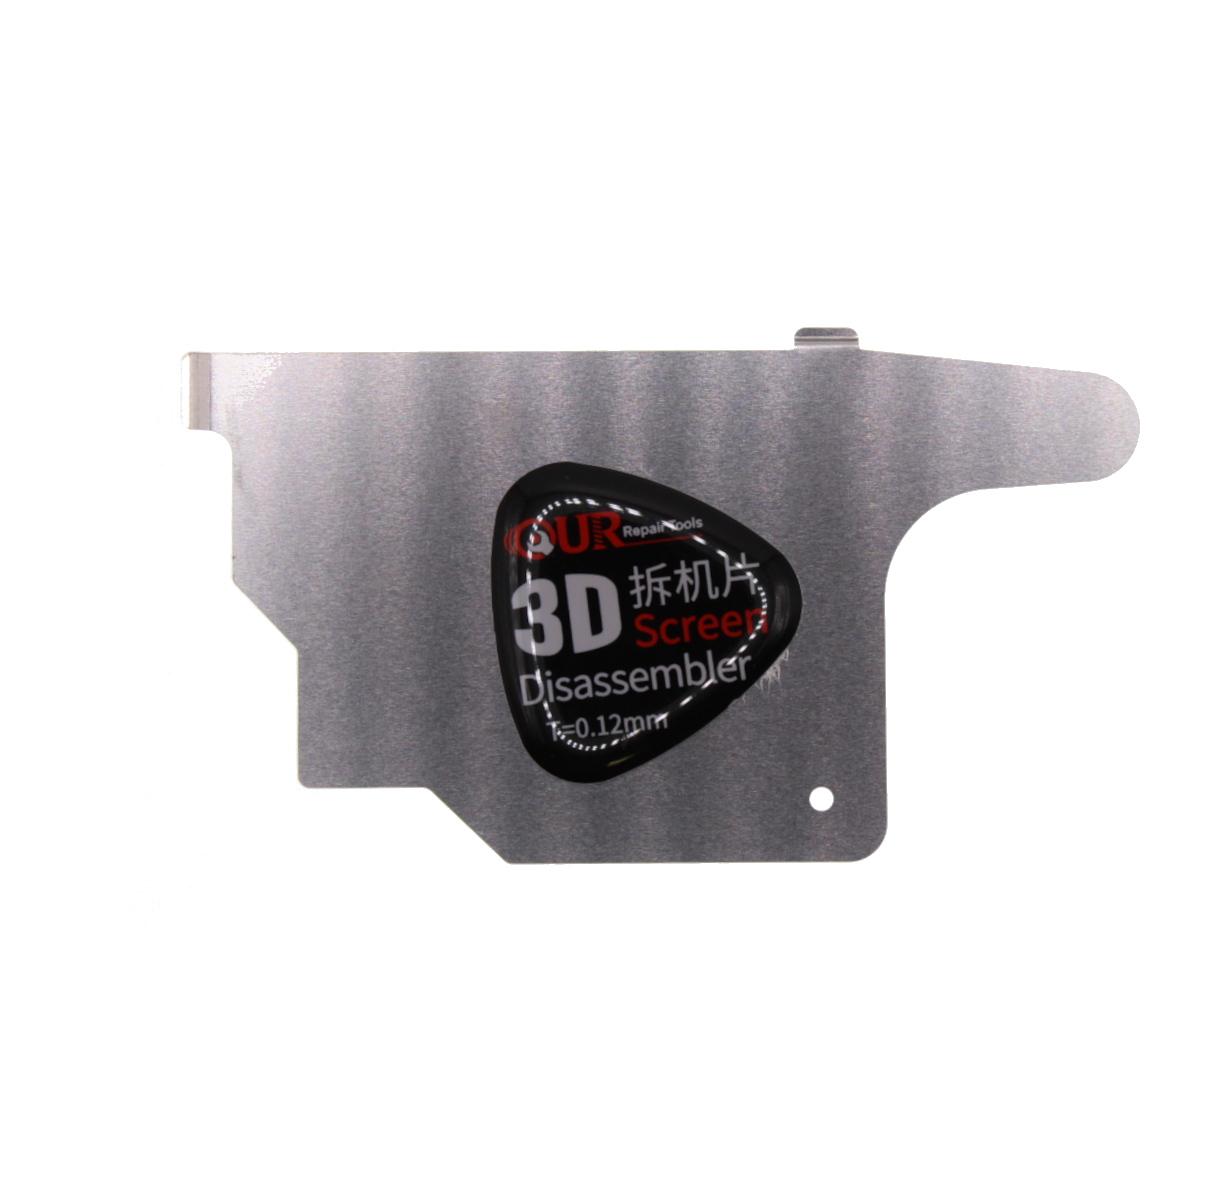 Musttby 3D Screen Disassembler T=0,12mm - Tenký kovový otvírák pro LCD